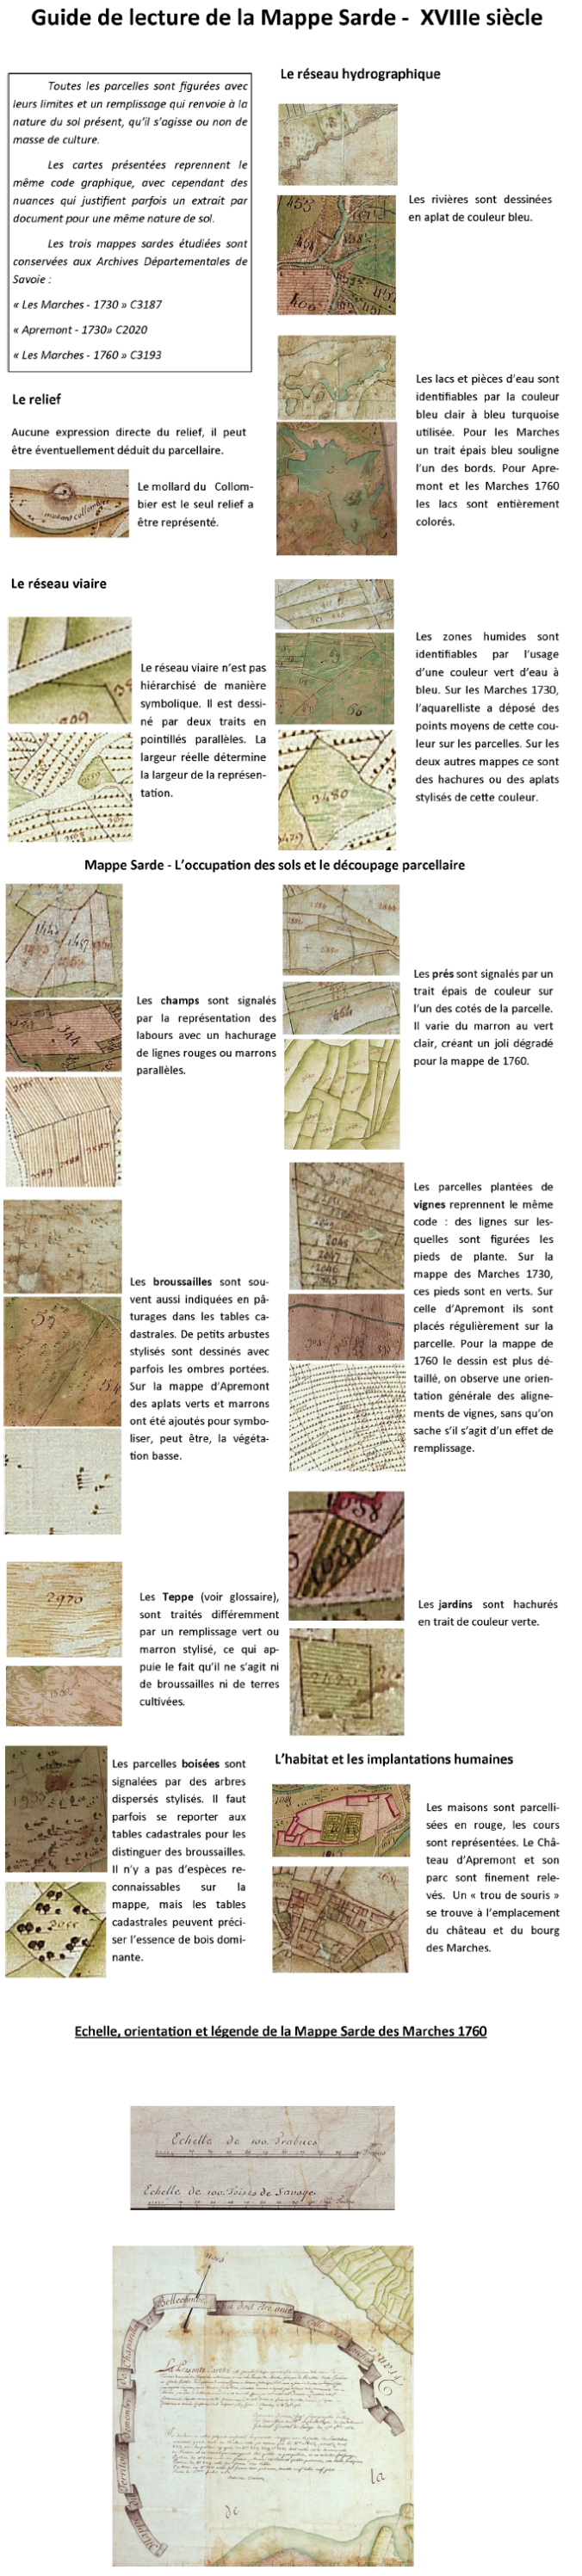 Guide de lecture de la Mappe Sarde - XVIIIe siècle (source)